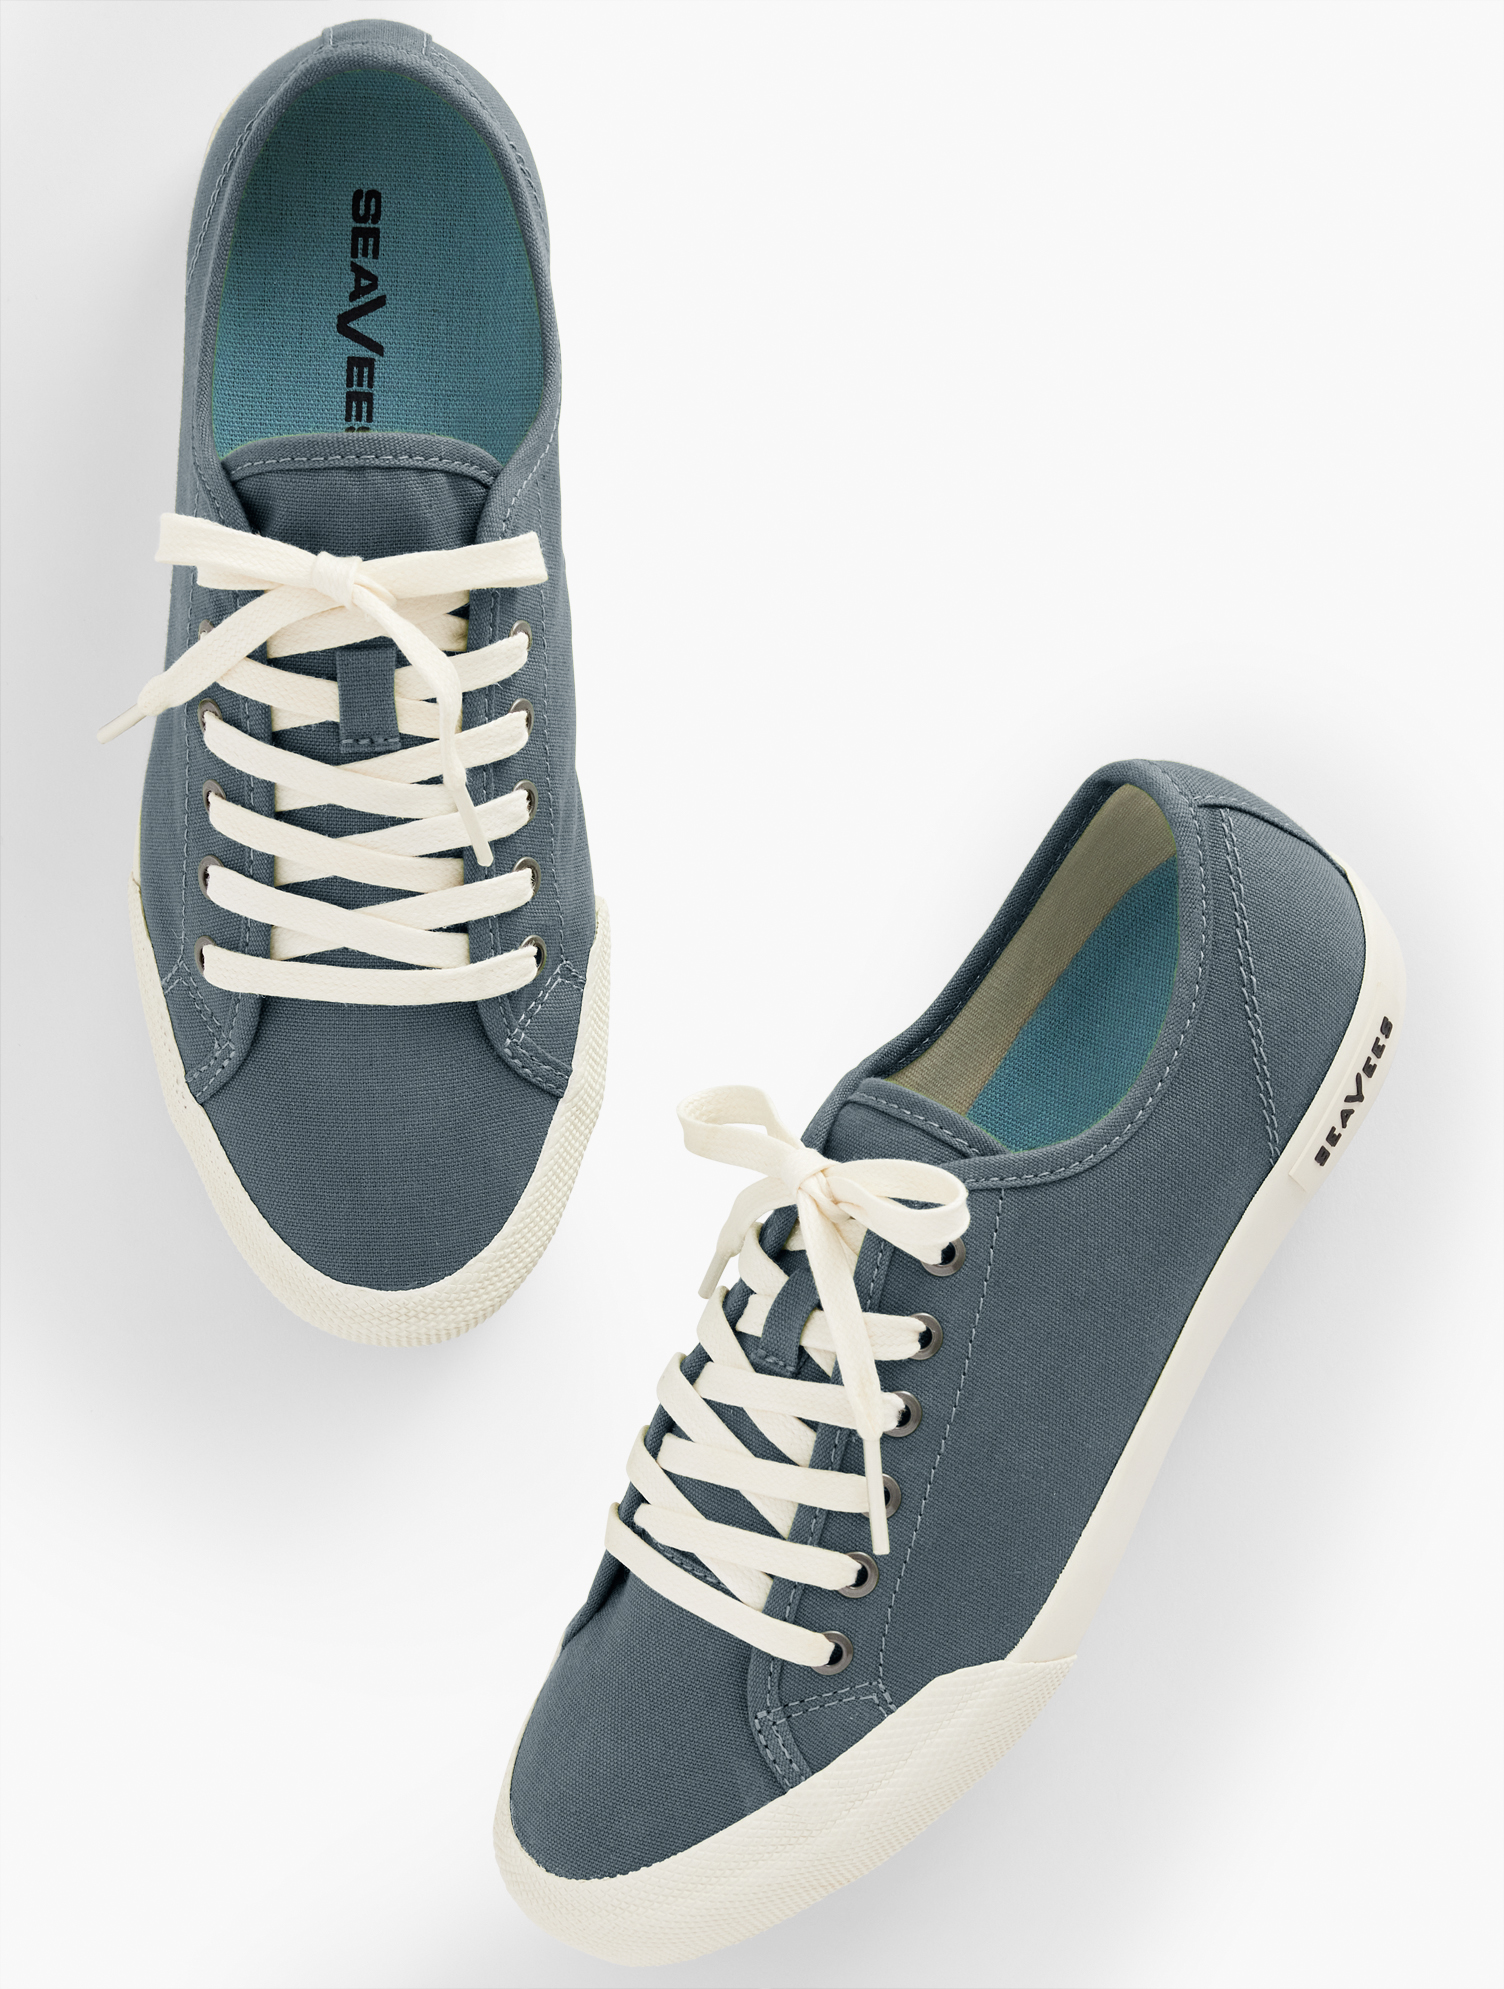 Talbots Seaveesâ¢ Monterey Classic Canvas Sneakers - Slate Navy Blue - 9m